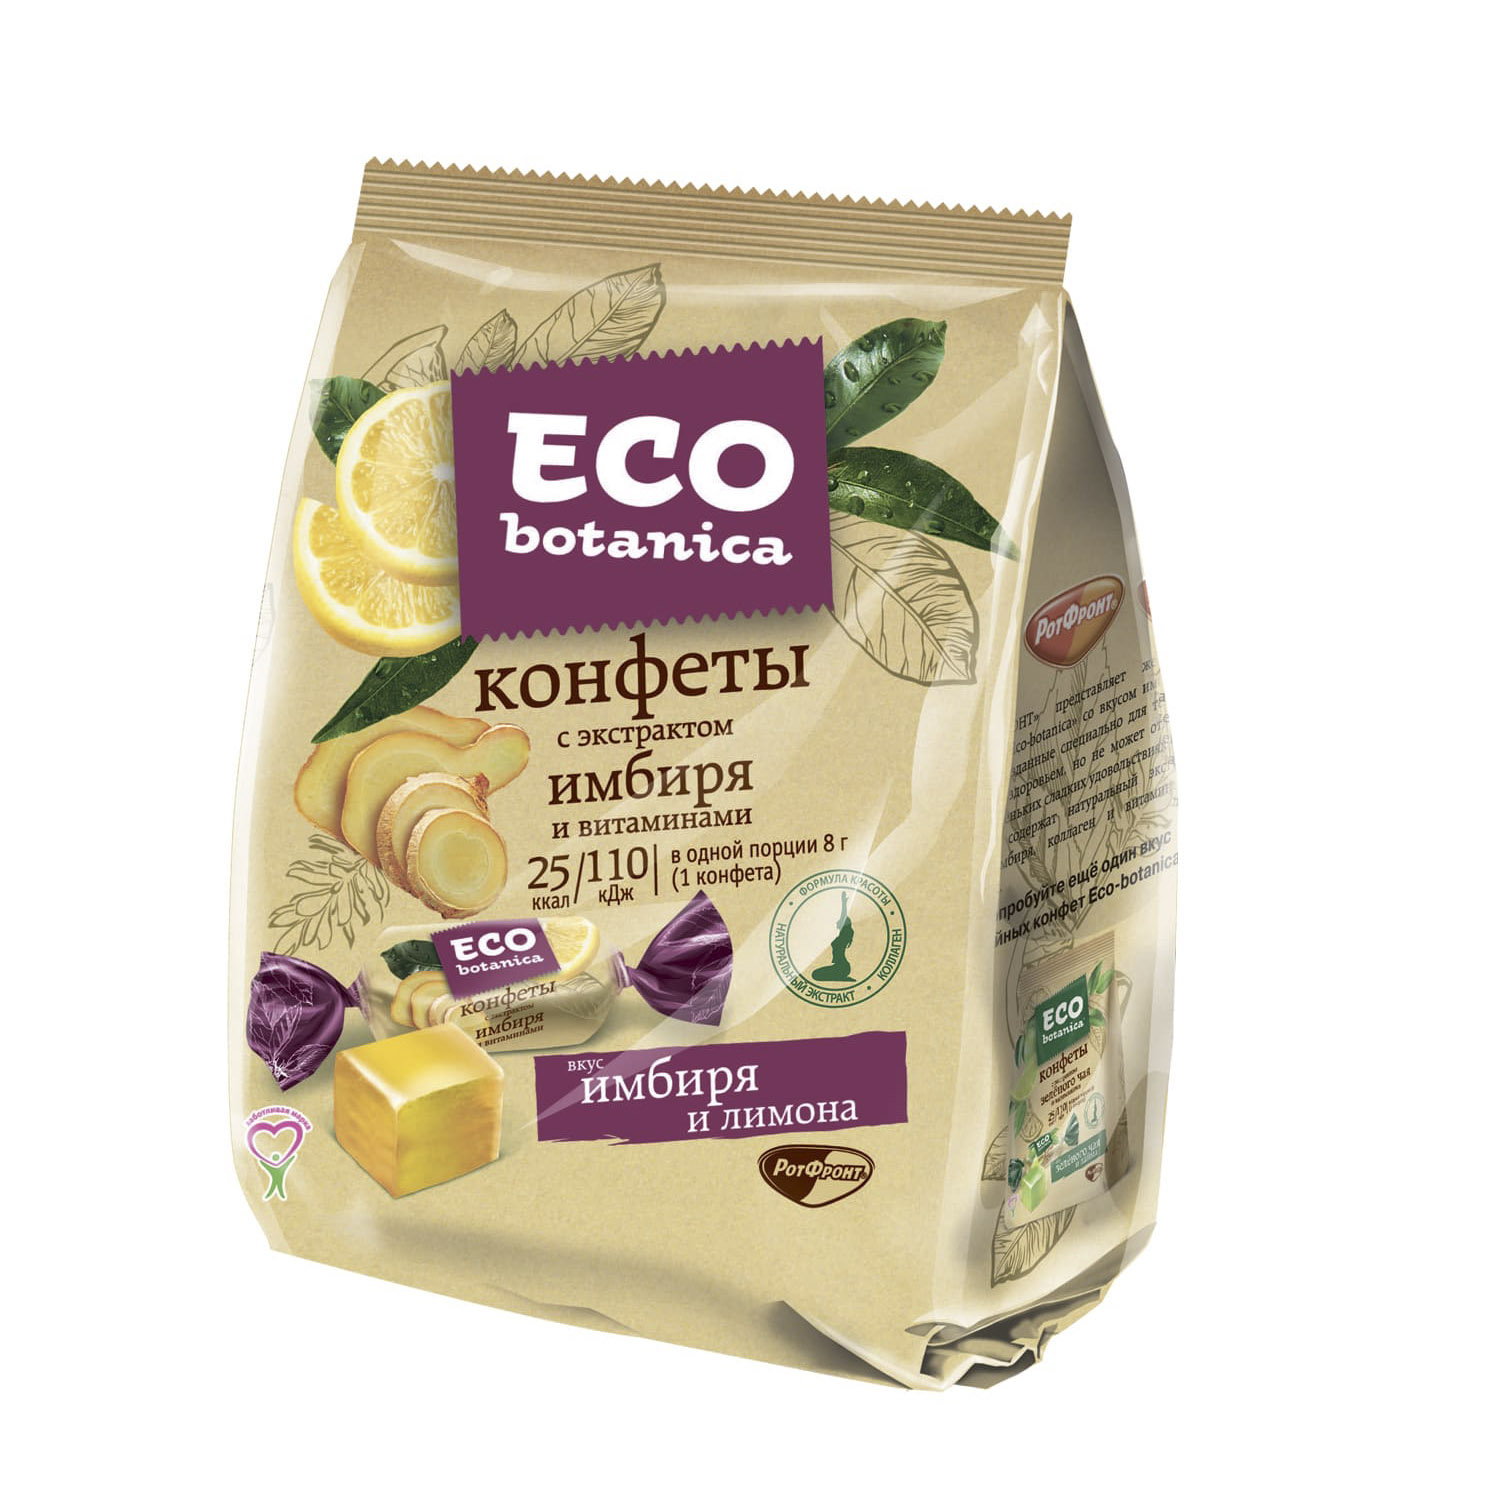 Конфеты Eco botanica с экстрактом имбиря и витаминами 200 г коллаген 20 мл